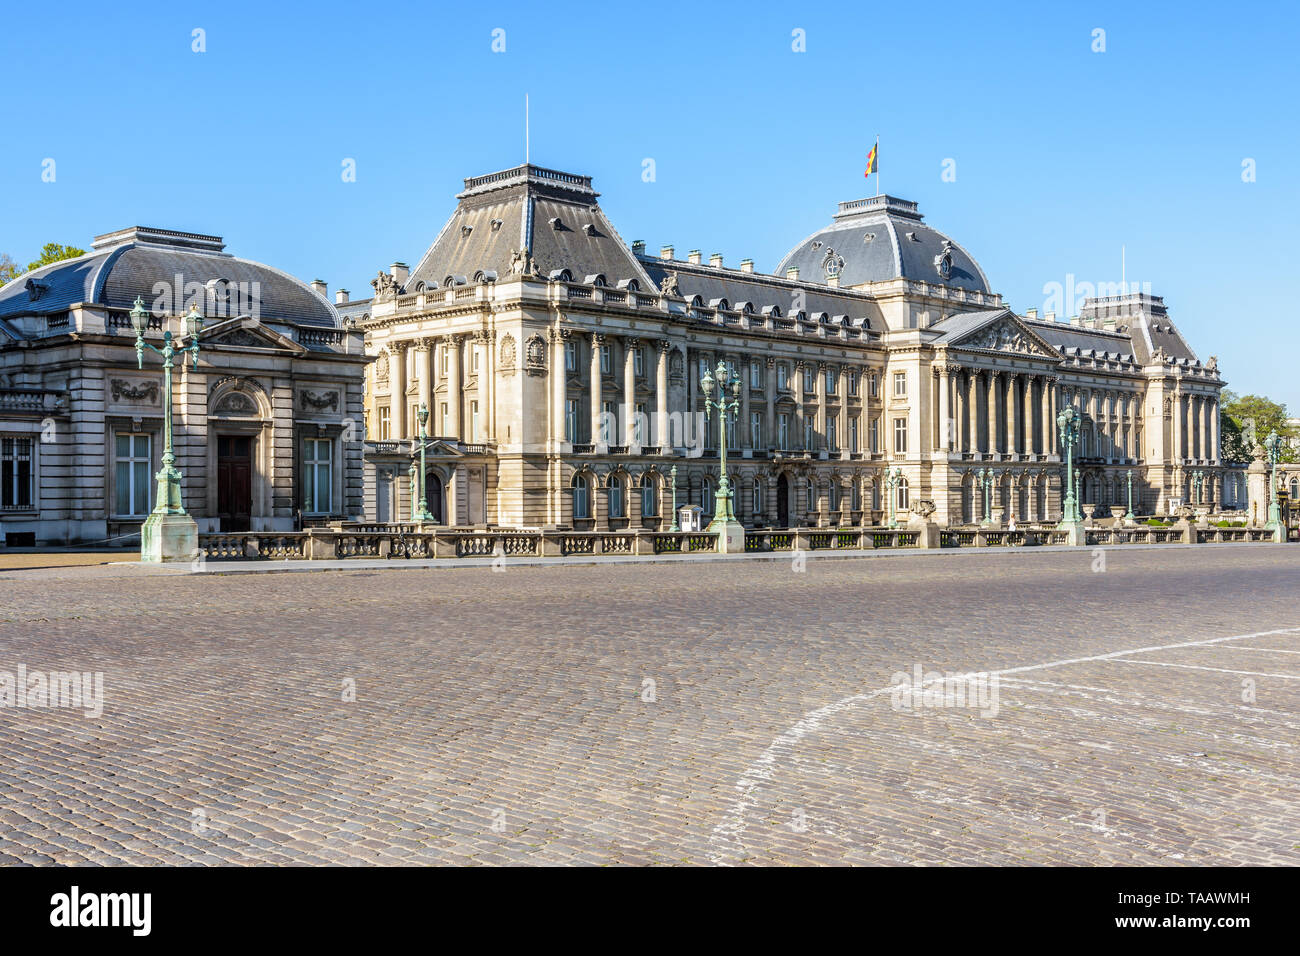 Vue générale de la façade principale du Palais Royal de Bruxelles, le palais du Roi et Reine des Belges à Bruxelles, Belgique. Banque D'Images